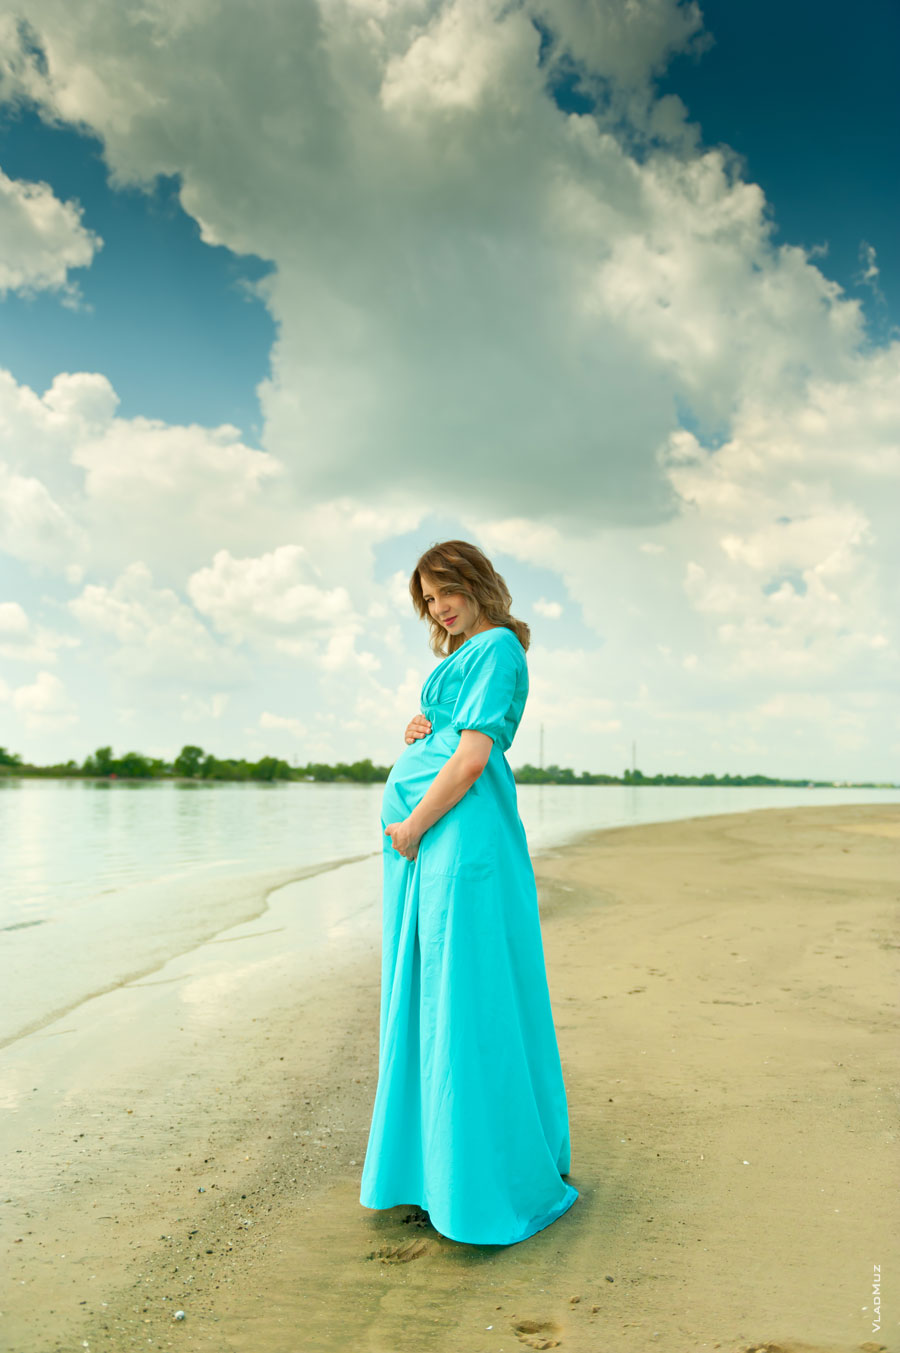 Фото беременной девушки в платье на песчаном берегу, на фоне высокого облачного неба